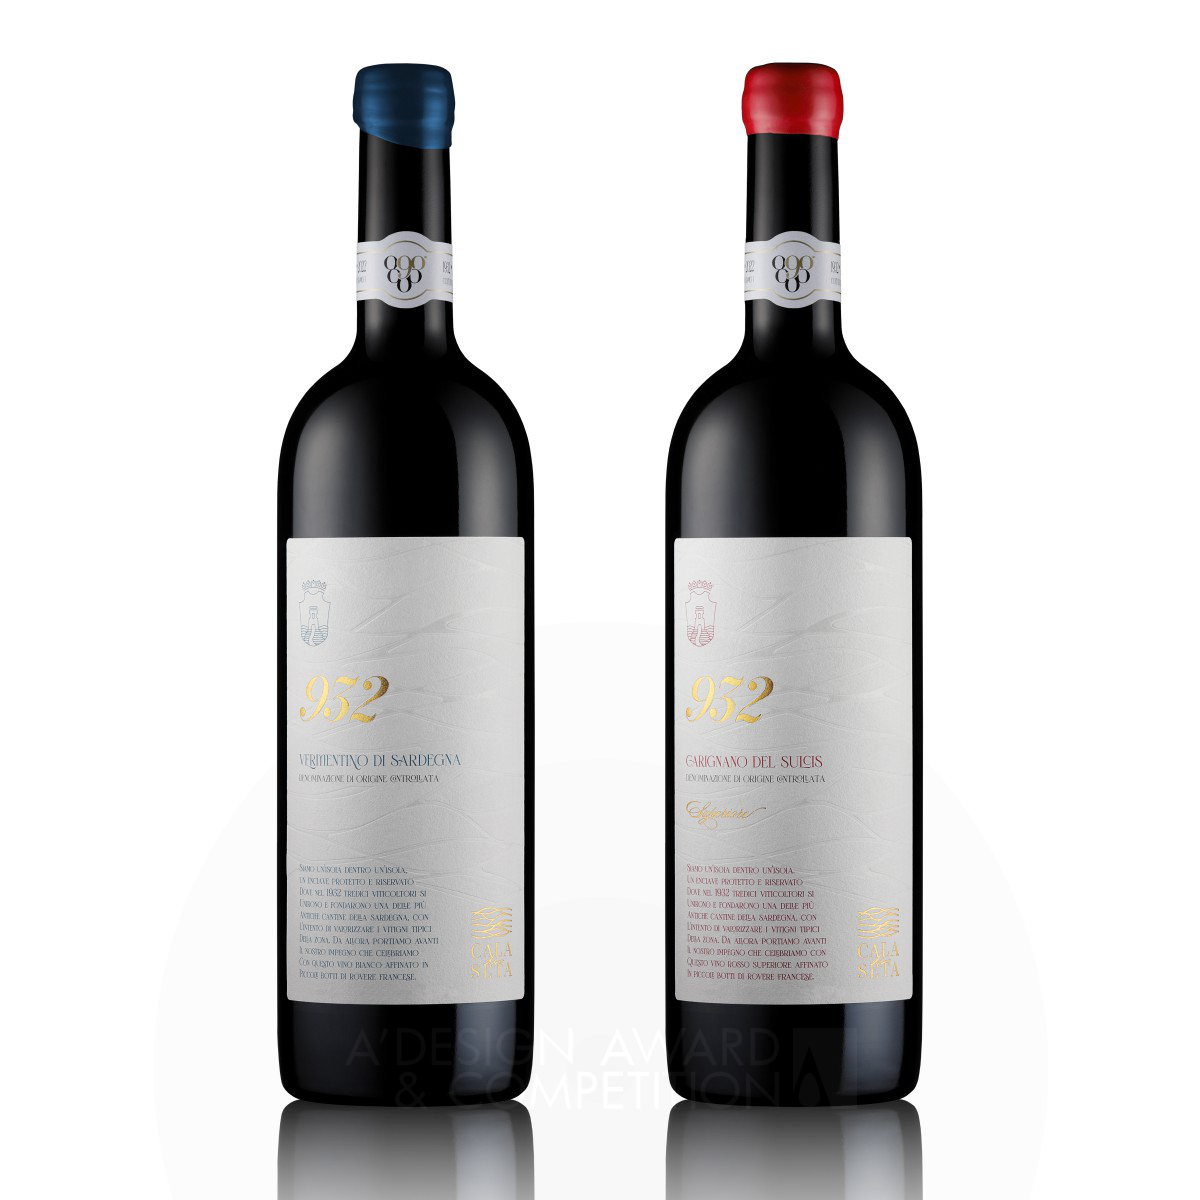 Giovanni Murgia wins Bronze at the prestigious A' Packaging Design Award with Cala di Seta 932 Wine Labels.